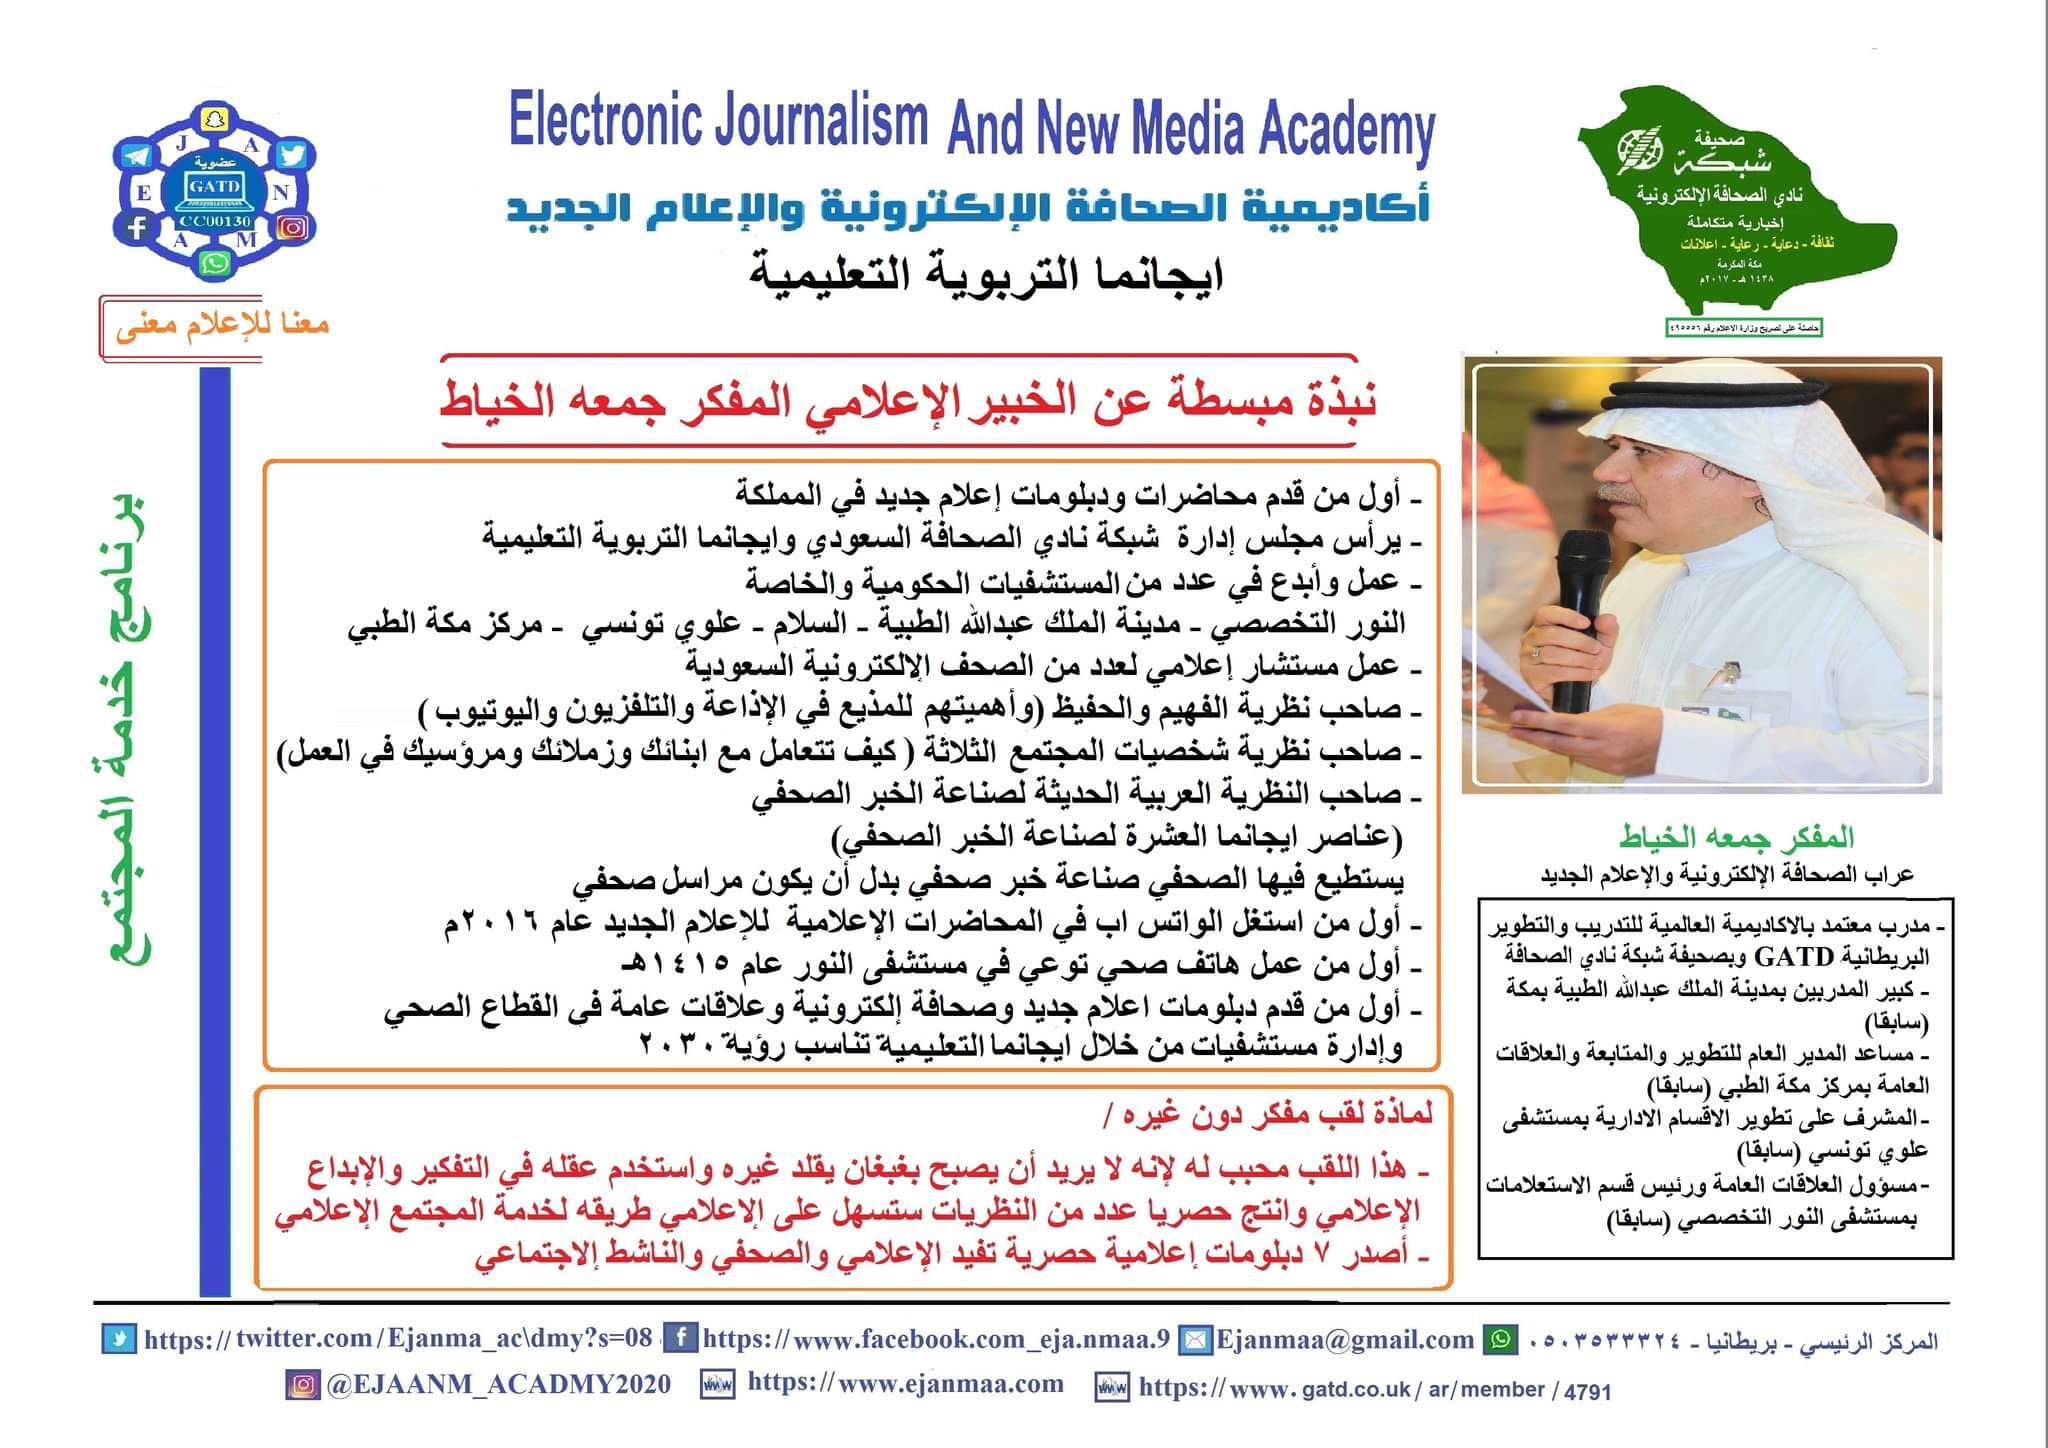 شبكة الصحافة تنظم دورة *النقد الاعلامي البناء والهدام* يستفيد منها أكثر من ١٠٠ سوشال ميديا واعلامي في المملكة والعالم العربي 